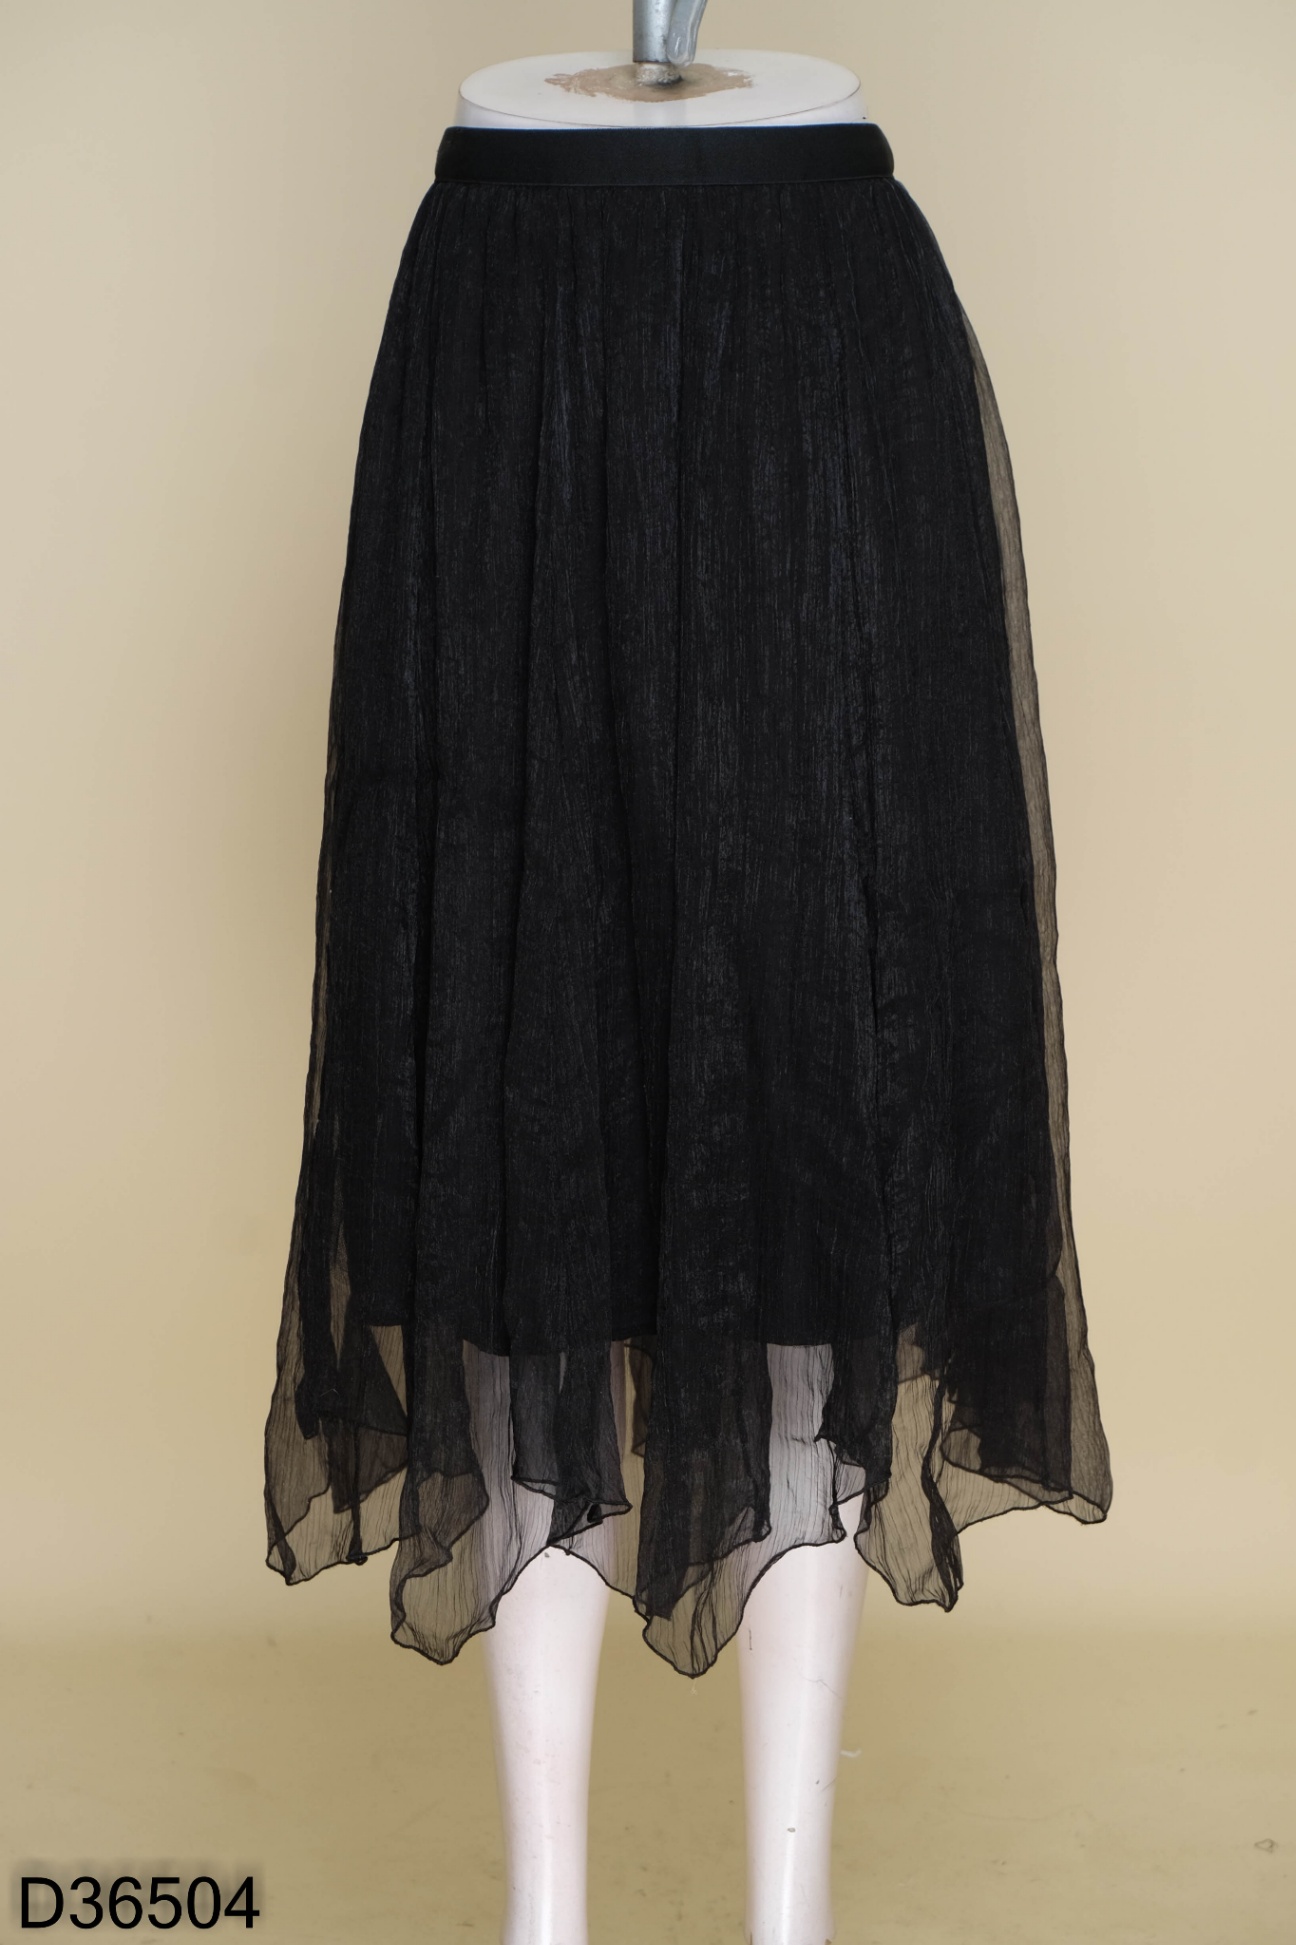 Chân váy nữ, chân váy voan 3 tầng 2 lớp màu đen trắng size S M L SKUCV-05A1  | Shopee Việt Nam